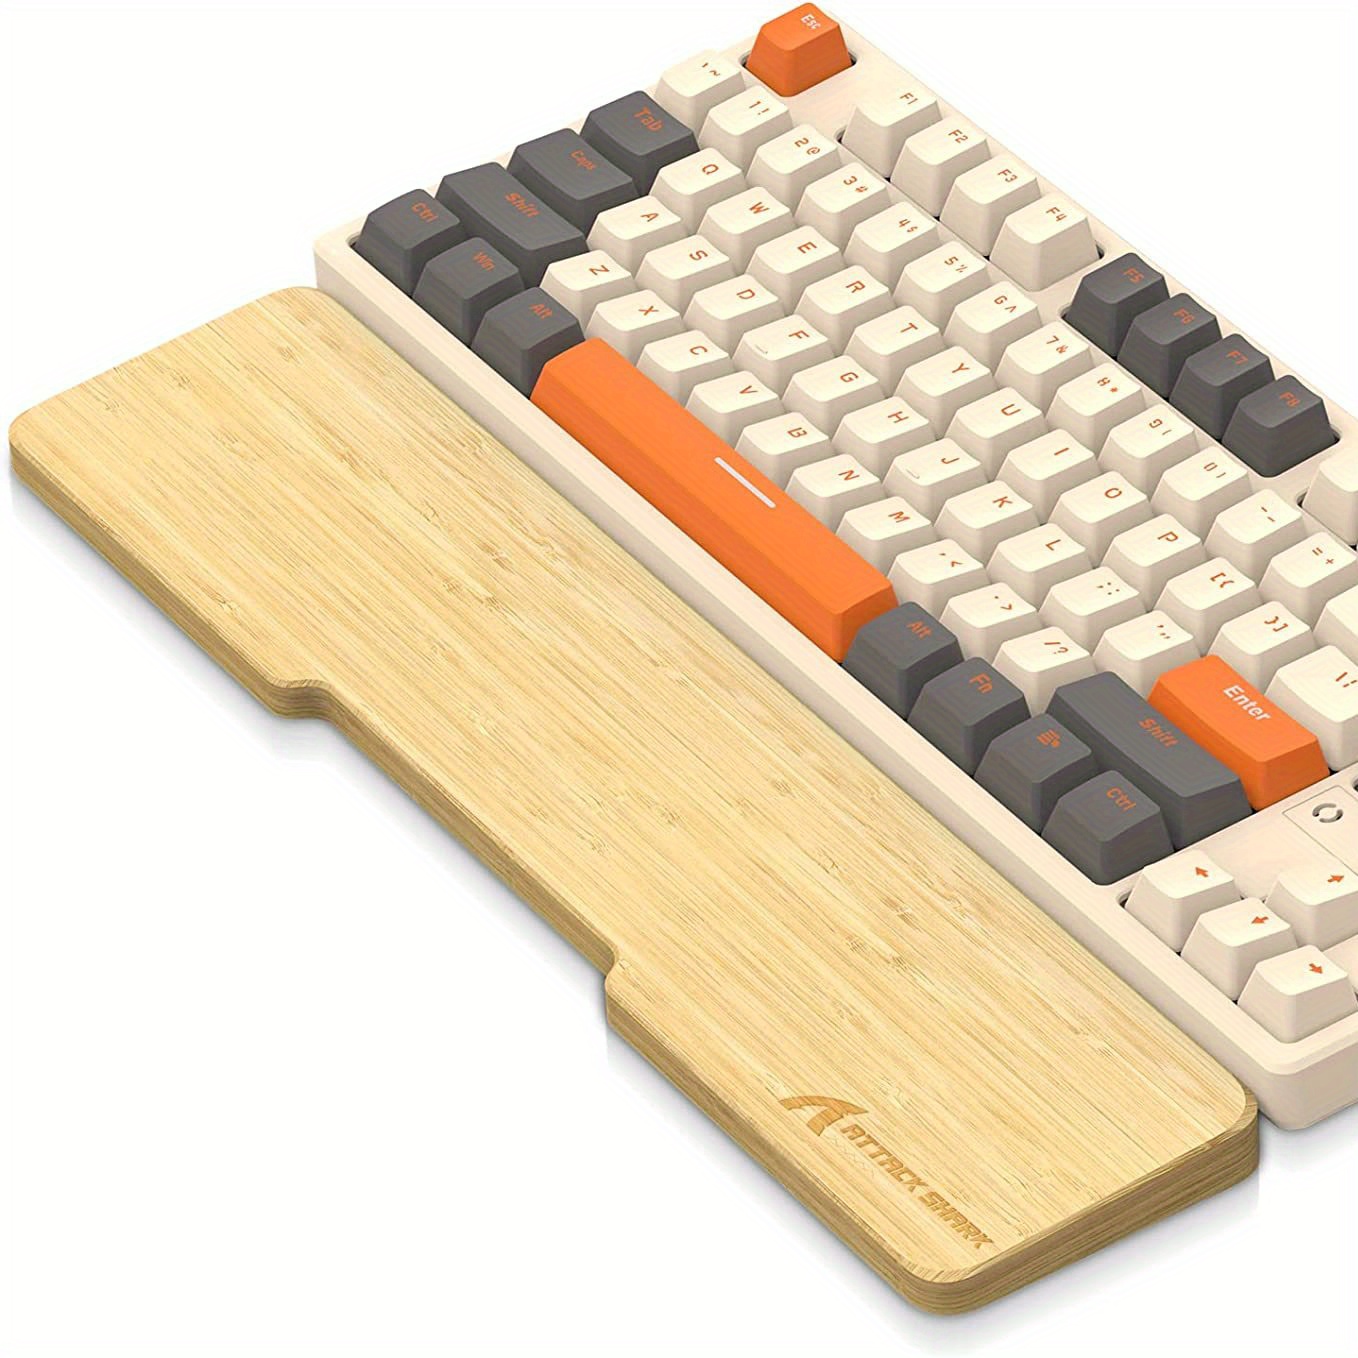 ATTACK SHARK Repose-poignet ergonomique en acrylique pour clavier de jeu  TKL, repose-poignet pour clavier mécanique, repose-poignet rigide pour